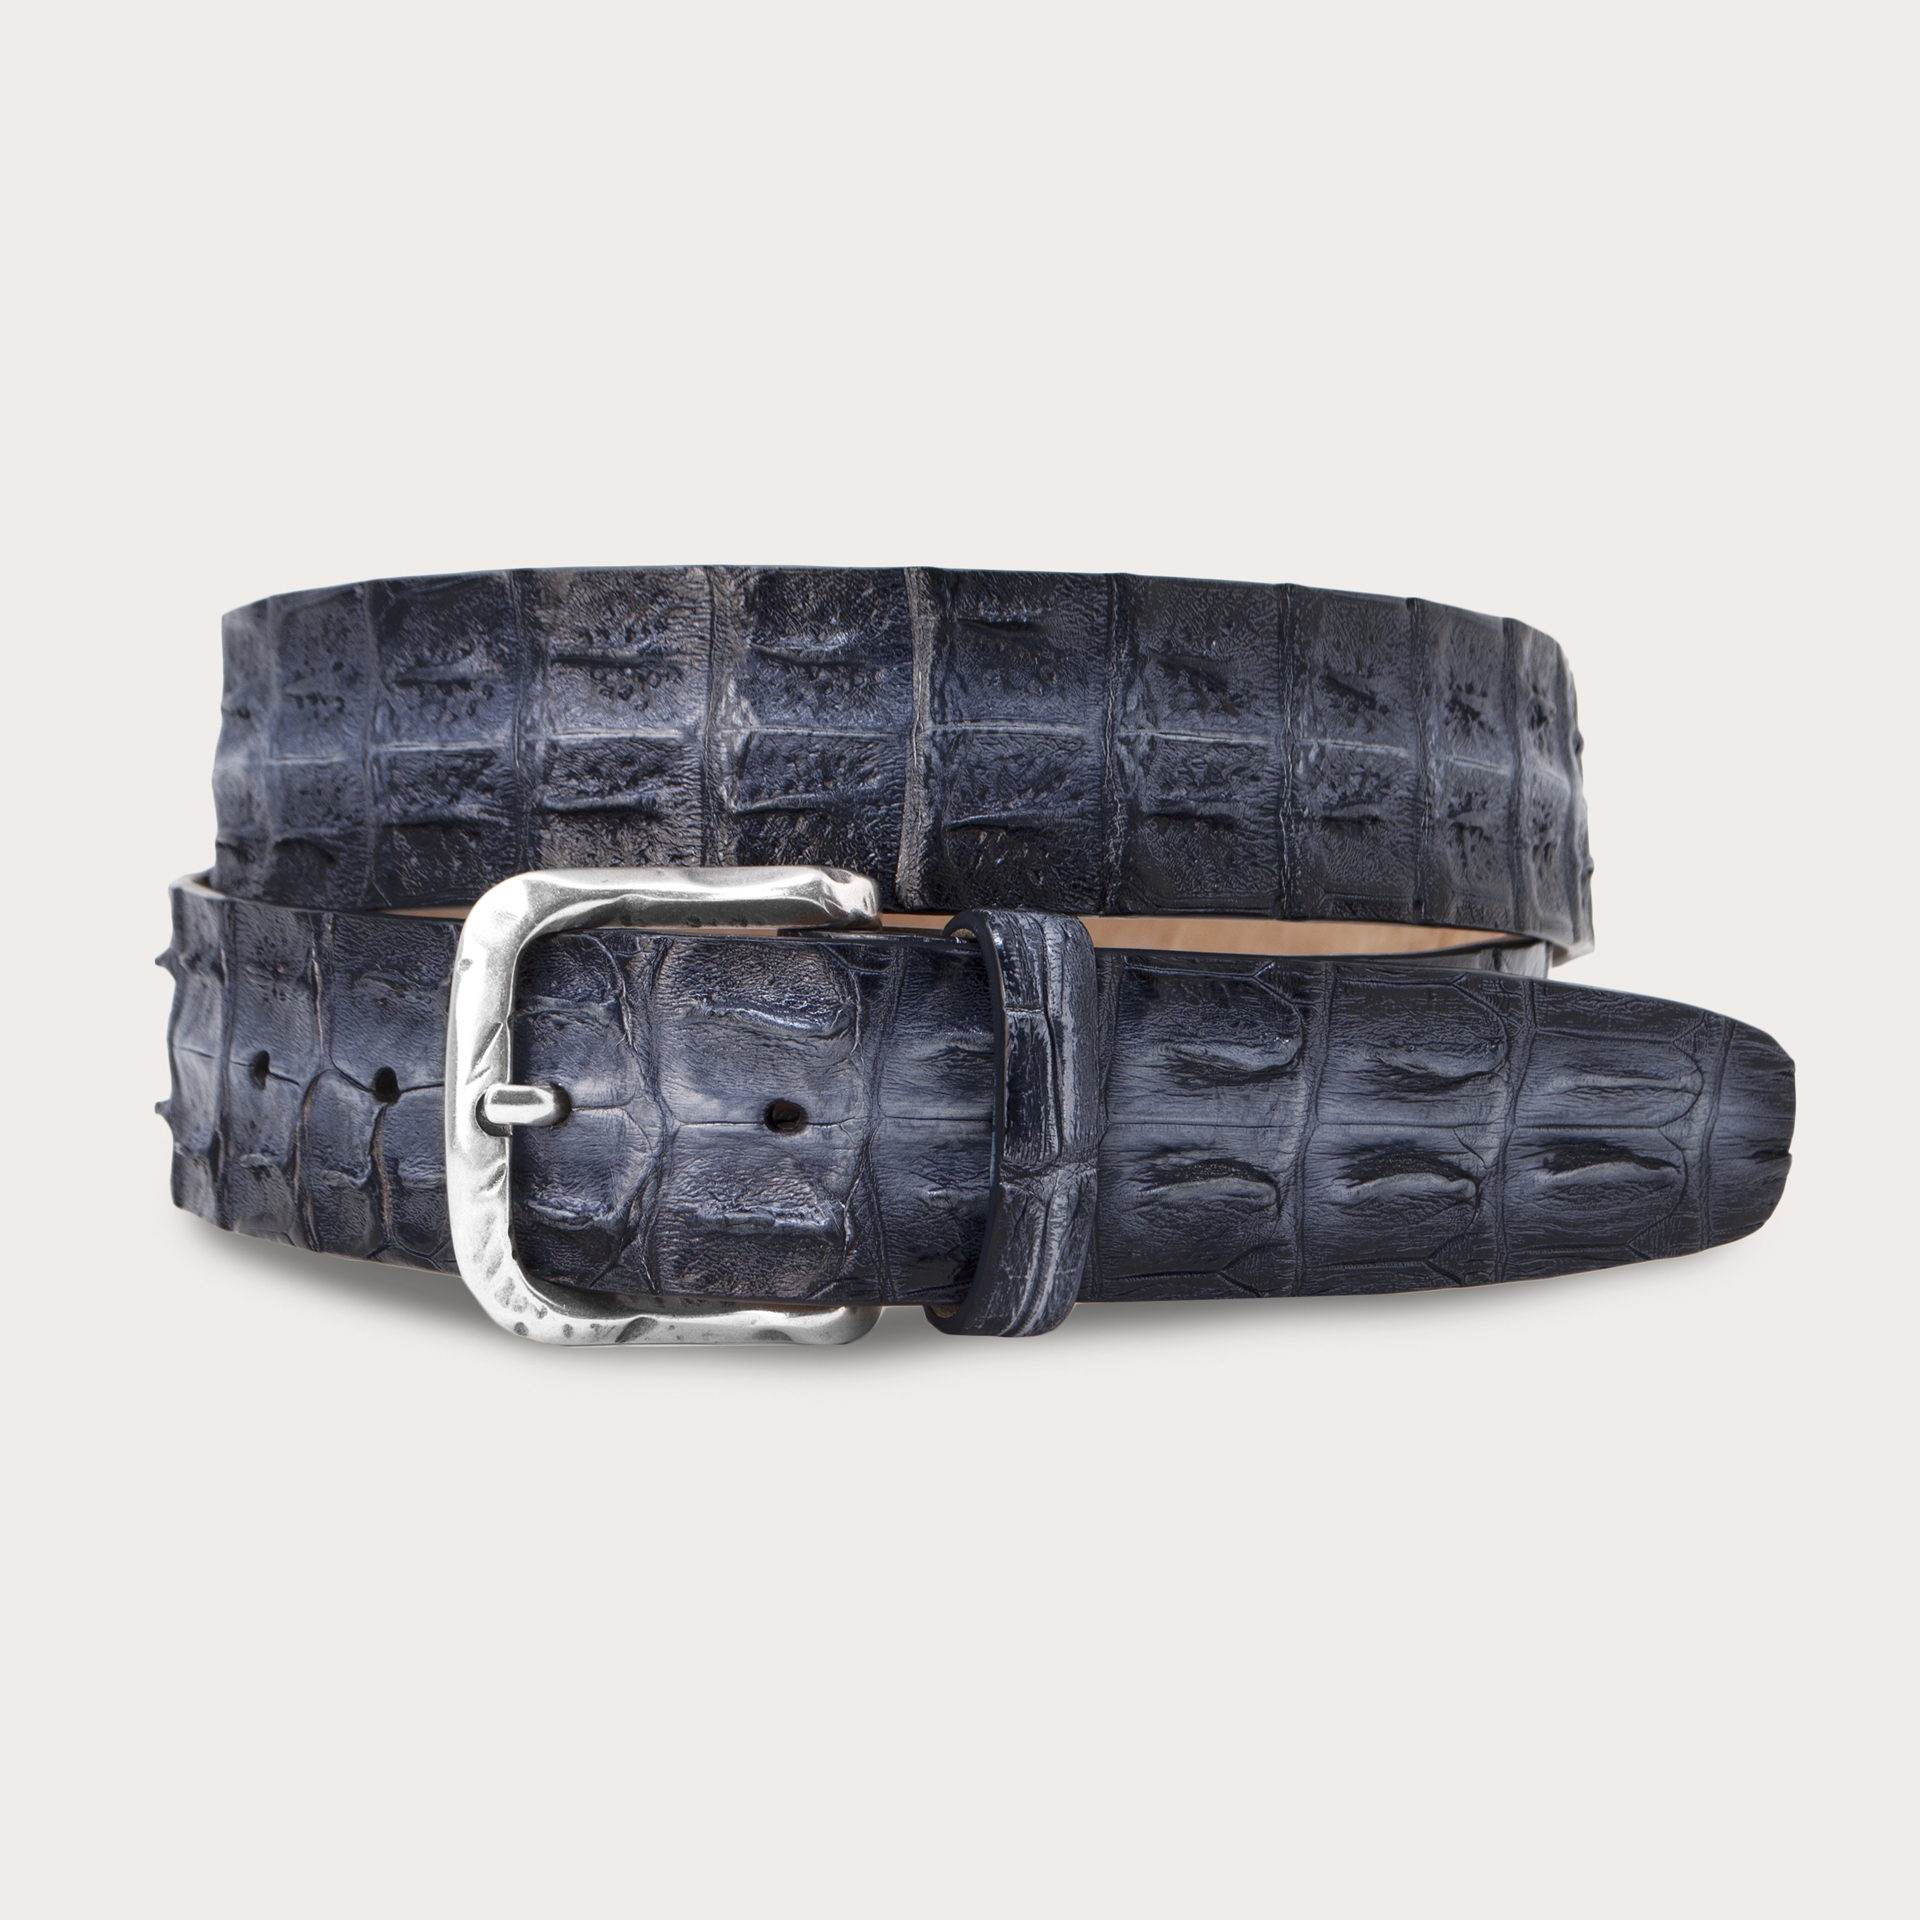 BRUCLE Cinturón de cocodrilo coloreado a mano, gris y negro